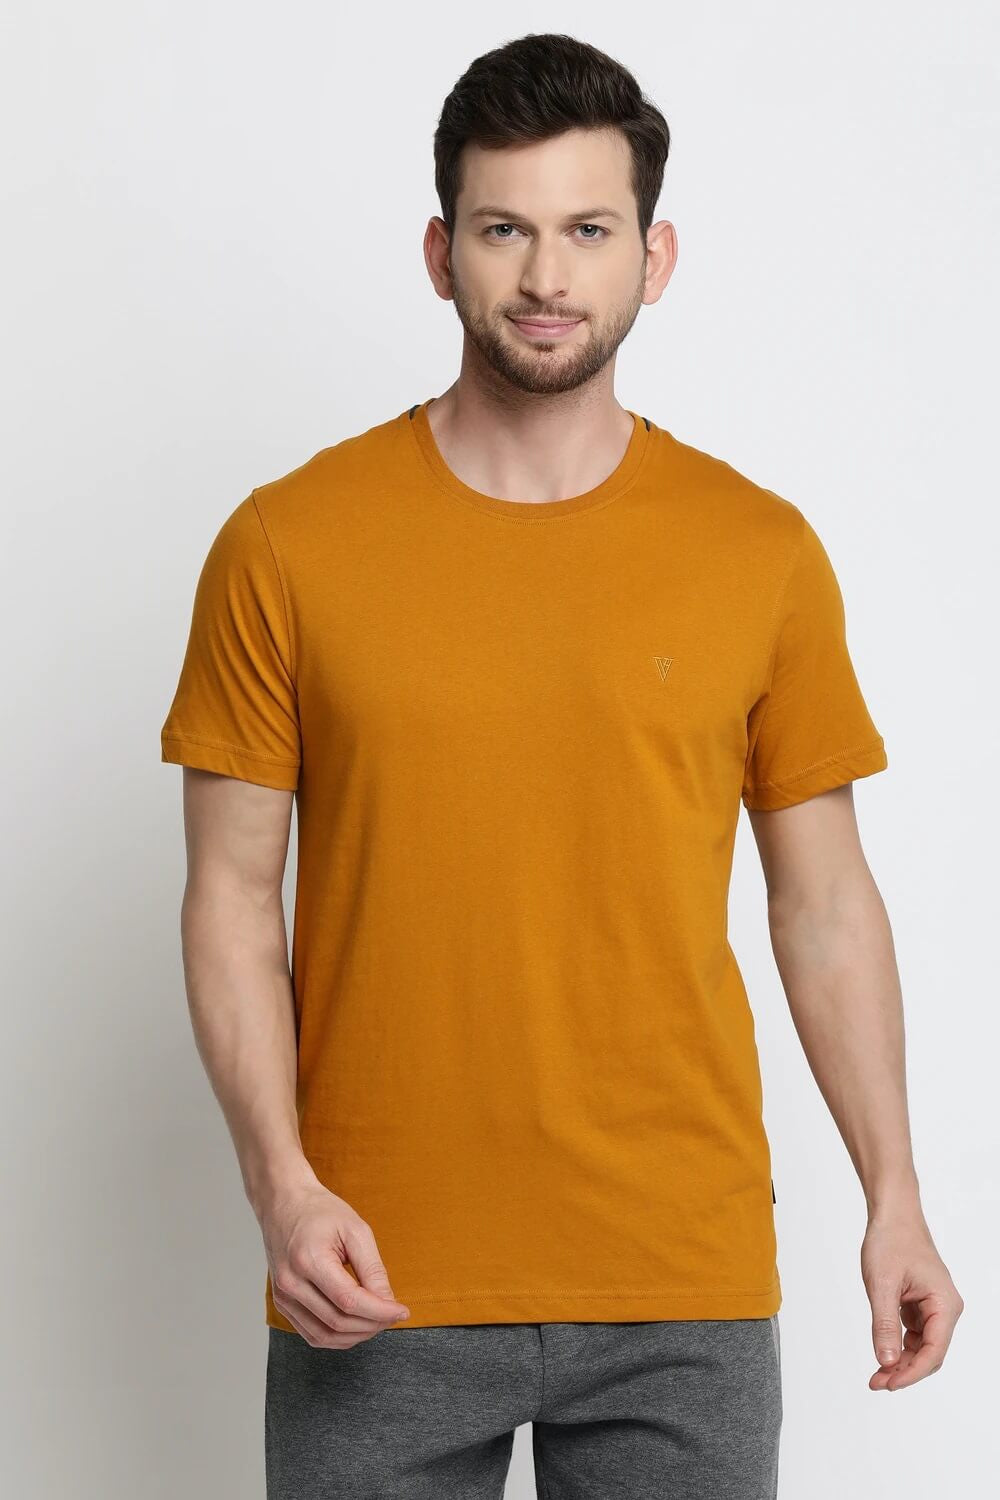 Van Heusen Mustard Tshirt for Men #60021